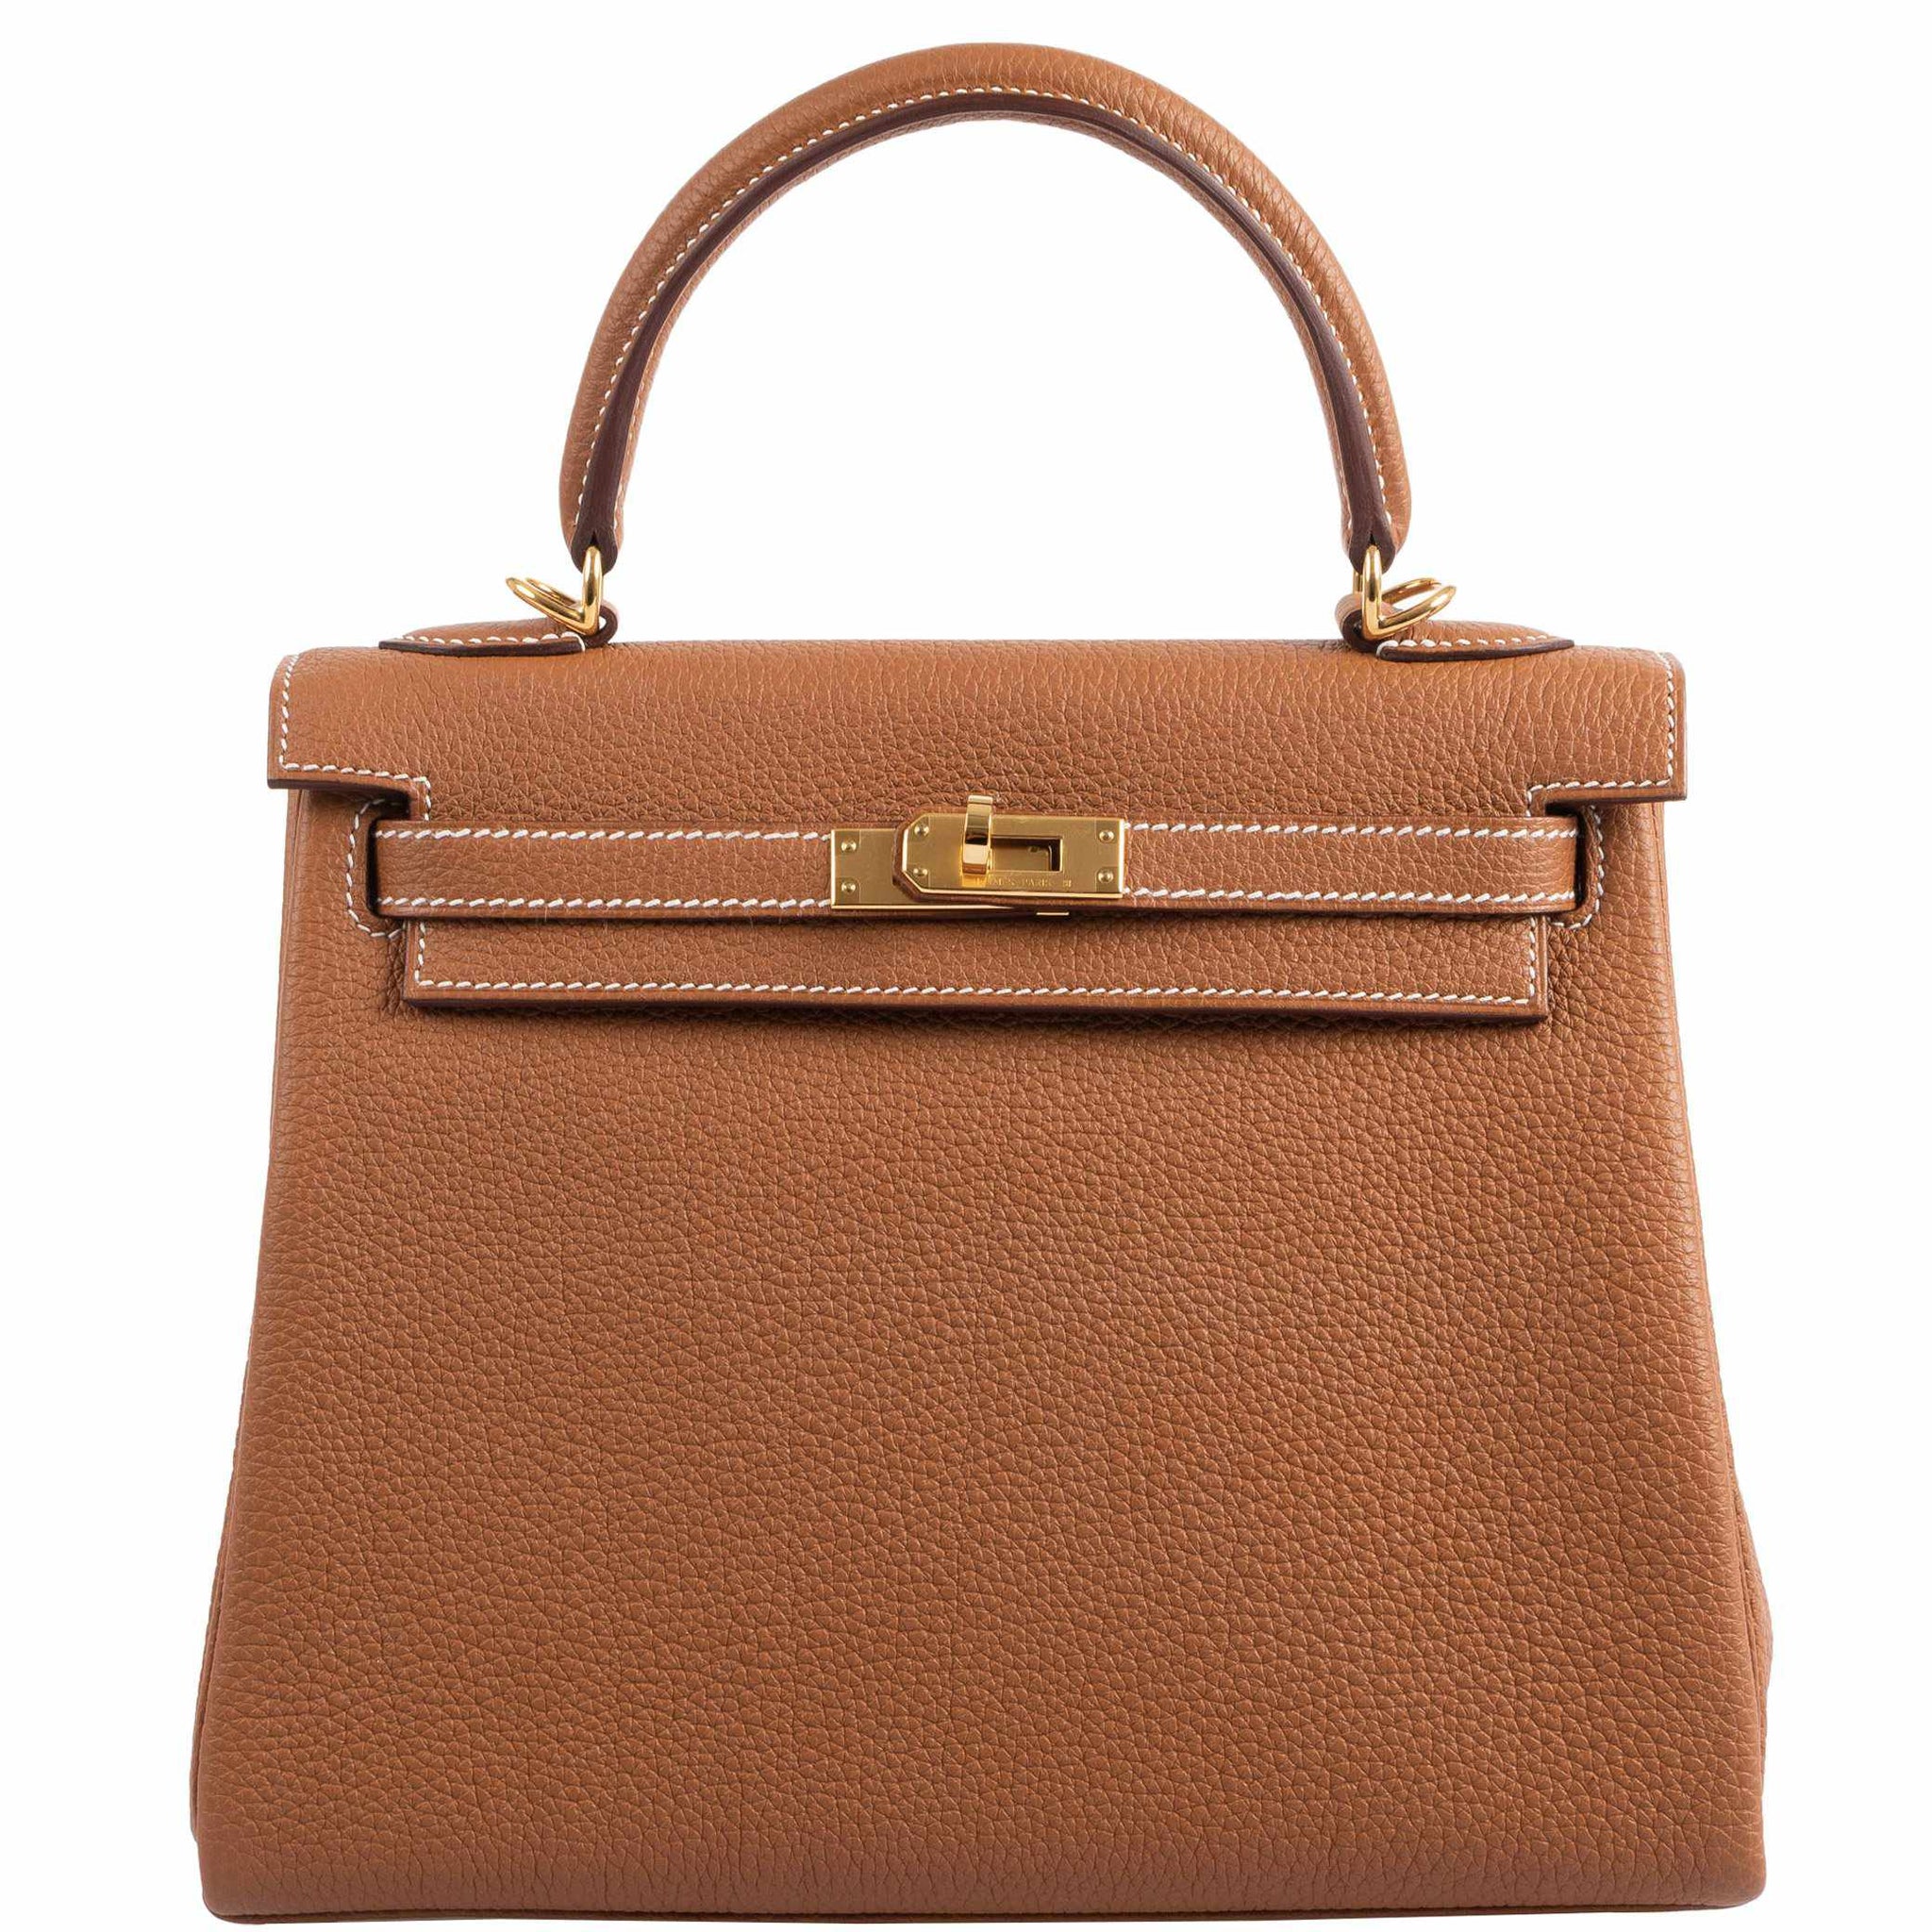 Hermes Kelly 25 Retourne Veau Togo Vert Amande Gold Hardware Leather  Handbags